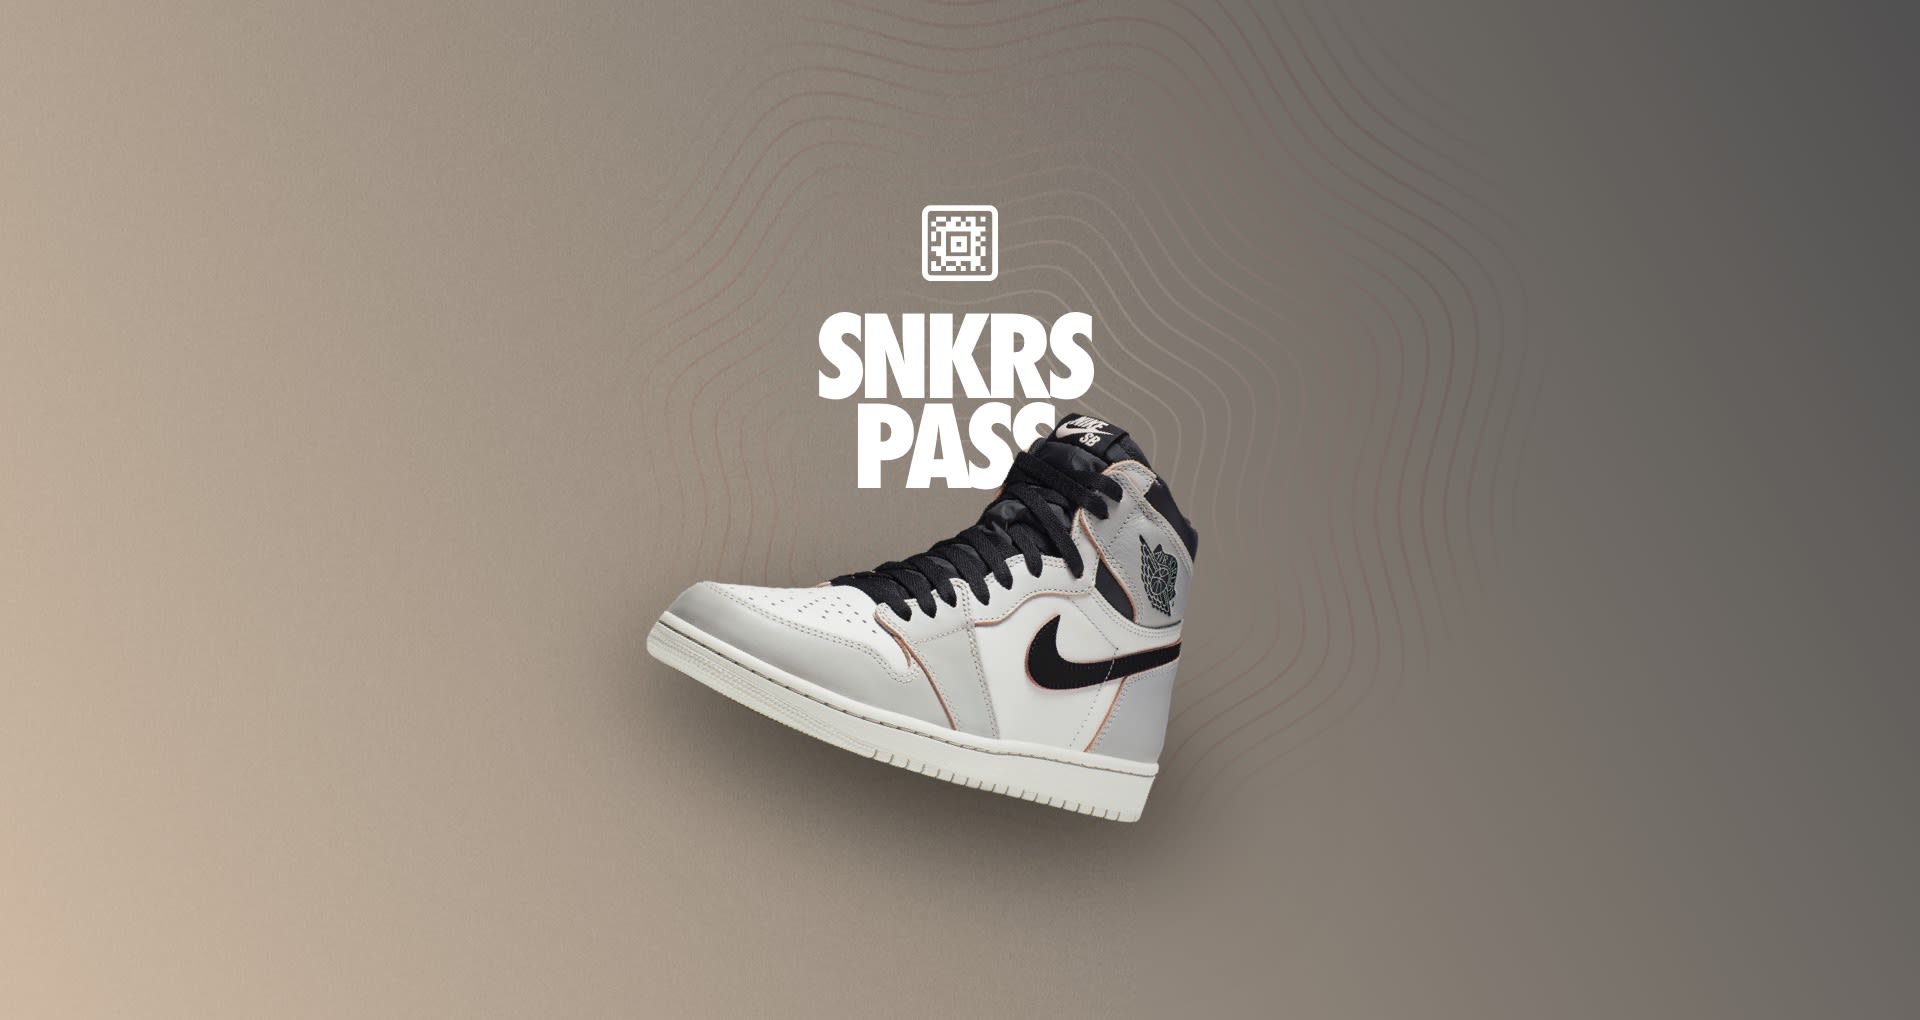 SNKRS Pass: SB x Air Jordan 1 'NYC to Paris' NYC. Nike SNKRS